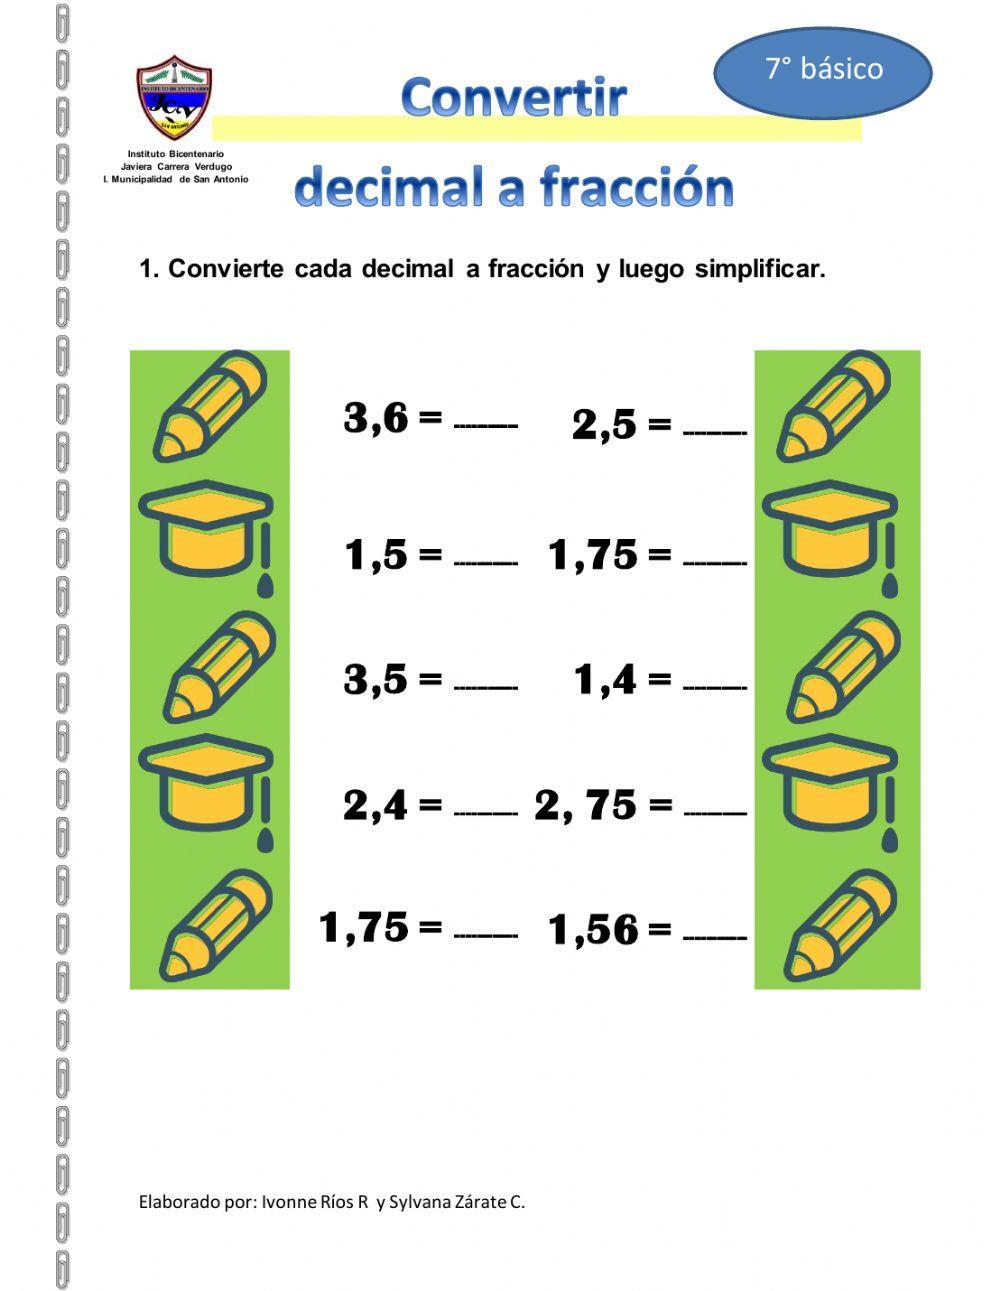 Convertir decimales a fracciones